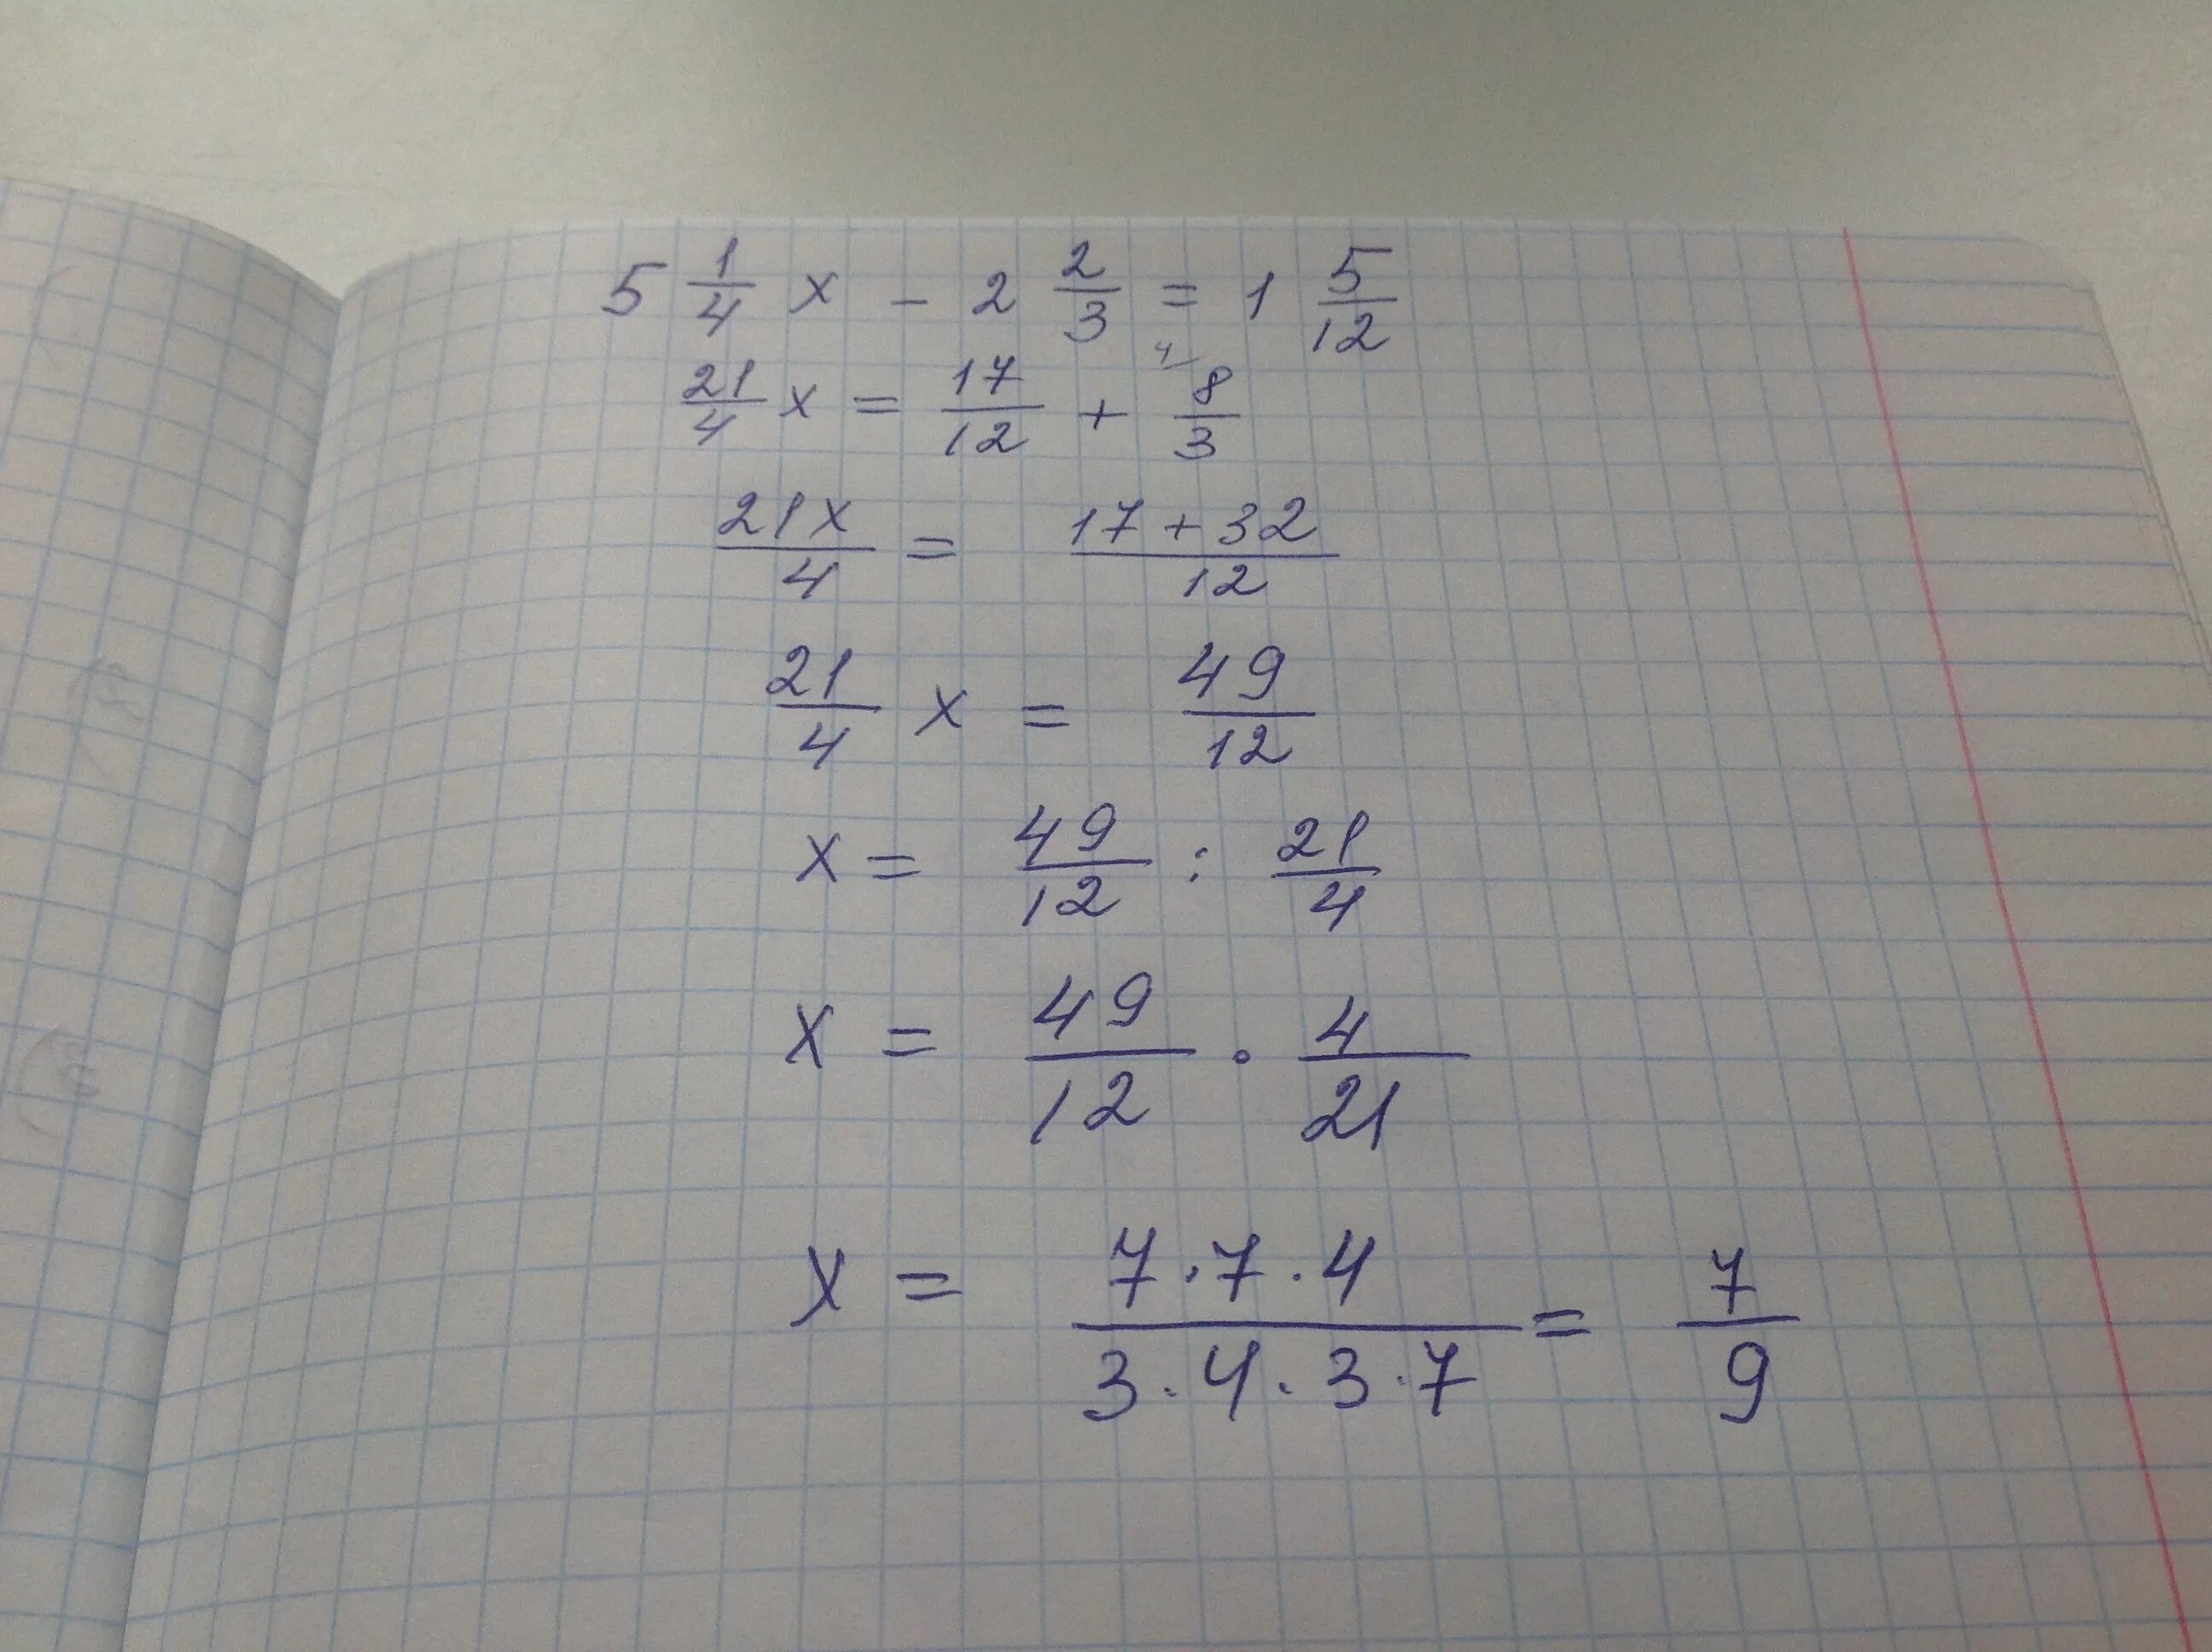 Реши уравнения 4x 2. 3x/5-x+1/2=1. 2 2/9 X 7 1/5 + 11/12 X 7 1/5 - 7 1/5 Х 1 3/4. Решение (2x+1)+4x=5x*(2x+1). (X²=(1/2)³×2⁴) x²=4-(x+1) (x-4) ответ.